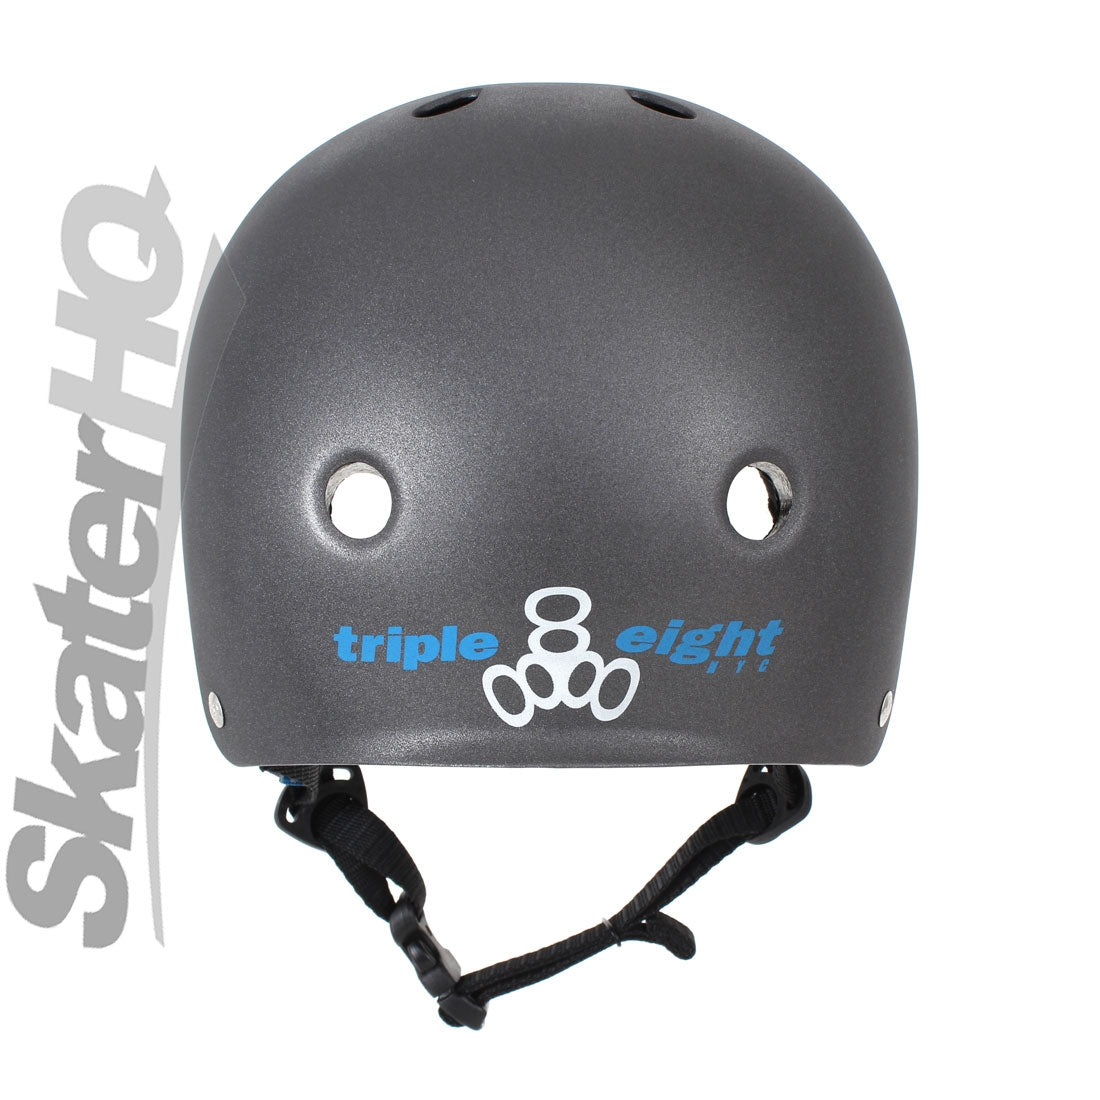 Triple 8 Certified Darklight - XS/S CLEARANCE Helmets